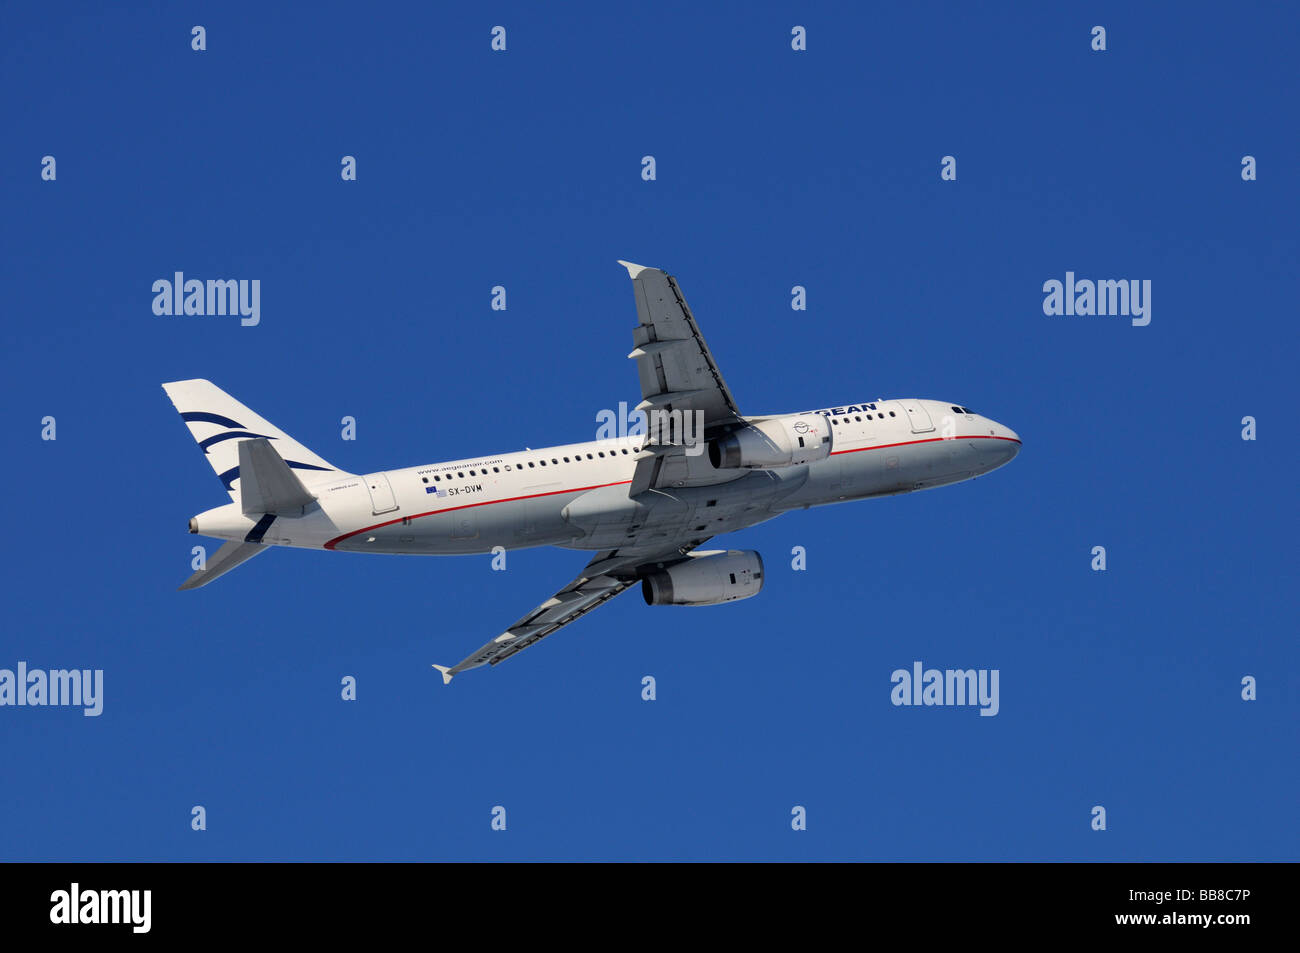 Aeromobili commerciali, Aegean Airlines, Airbus A320-200, arrampicata contro un acciaio-cielo blu Foto Stock